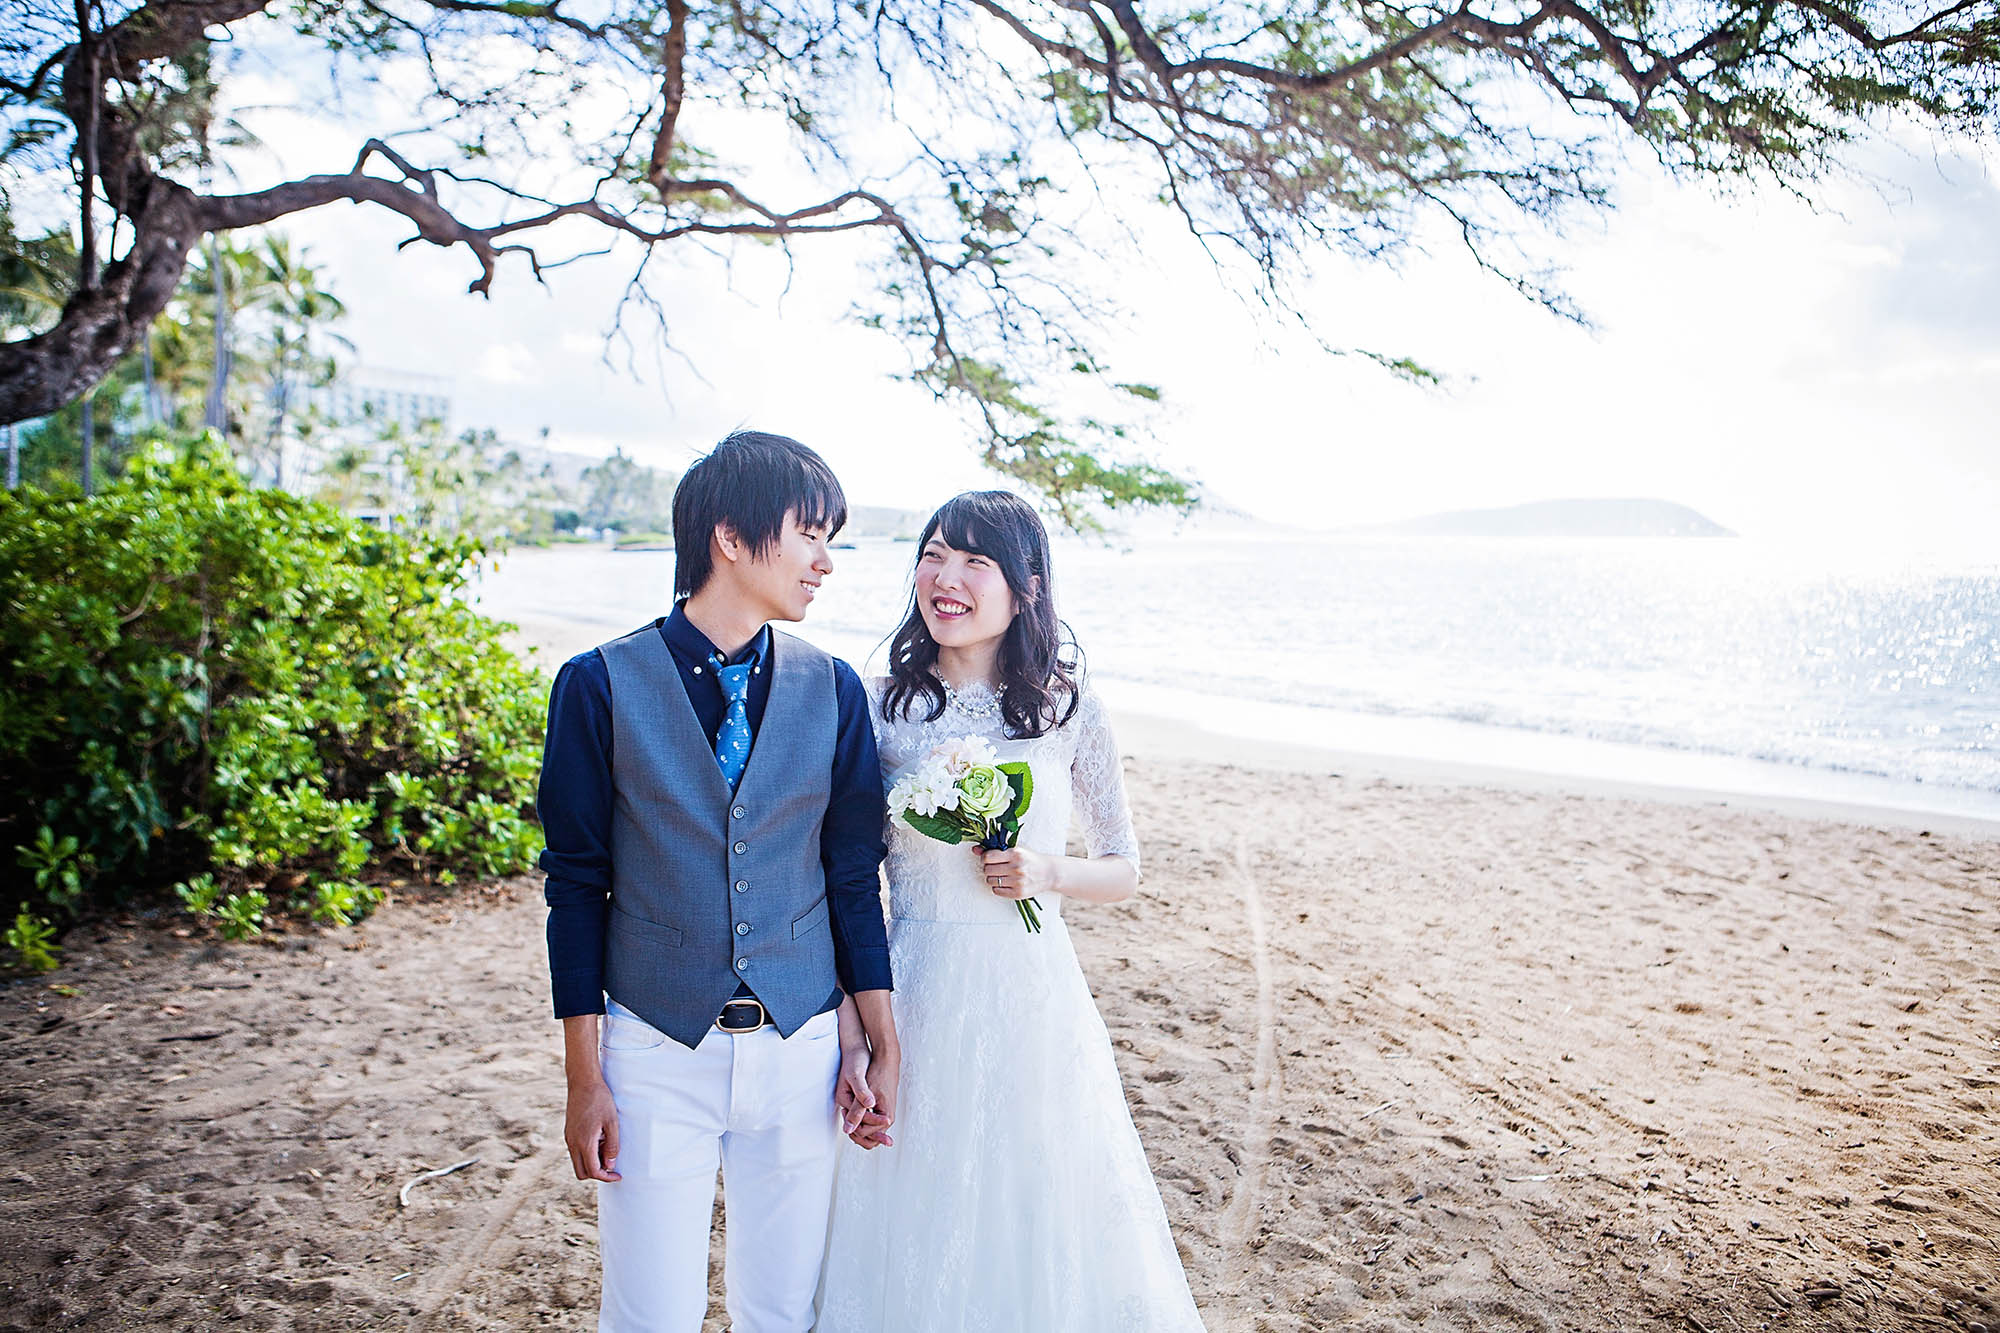 Honeymoon Wedding Photos At Waialae Beach Hawaii Wedding